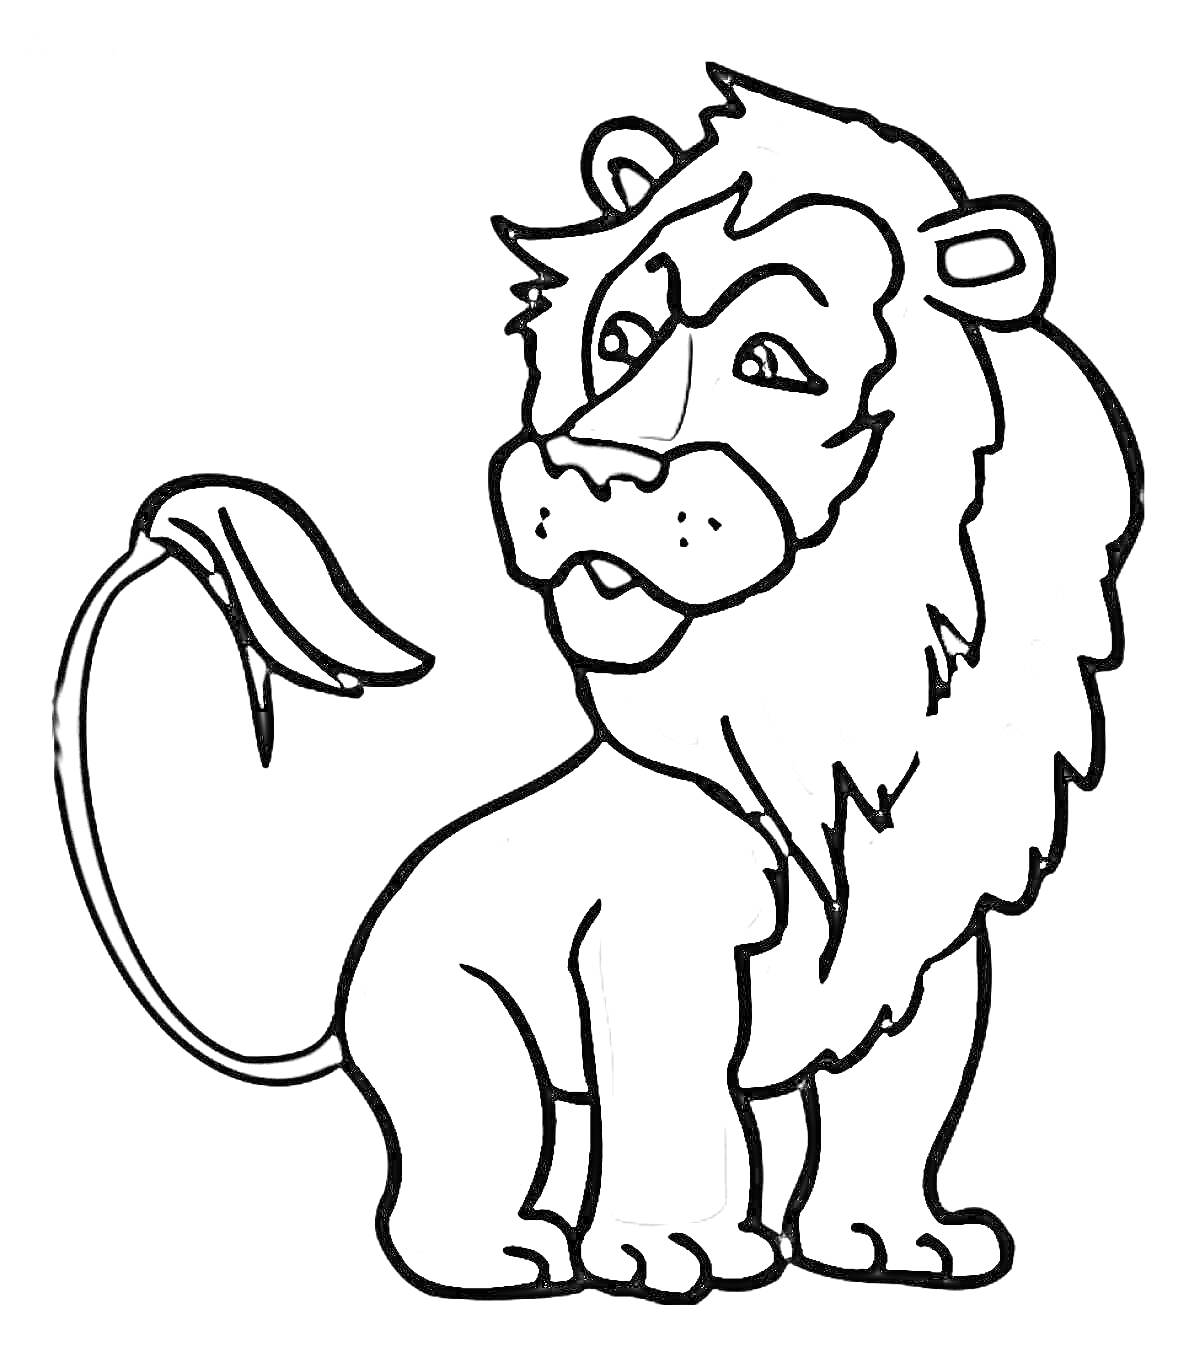 Раскраска Лев с гривой и хвостом, стоящий в профиль